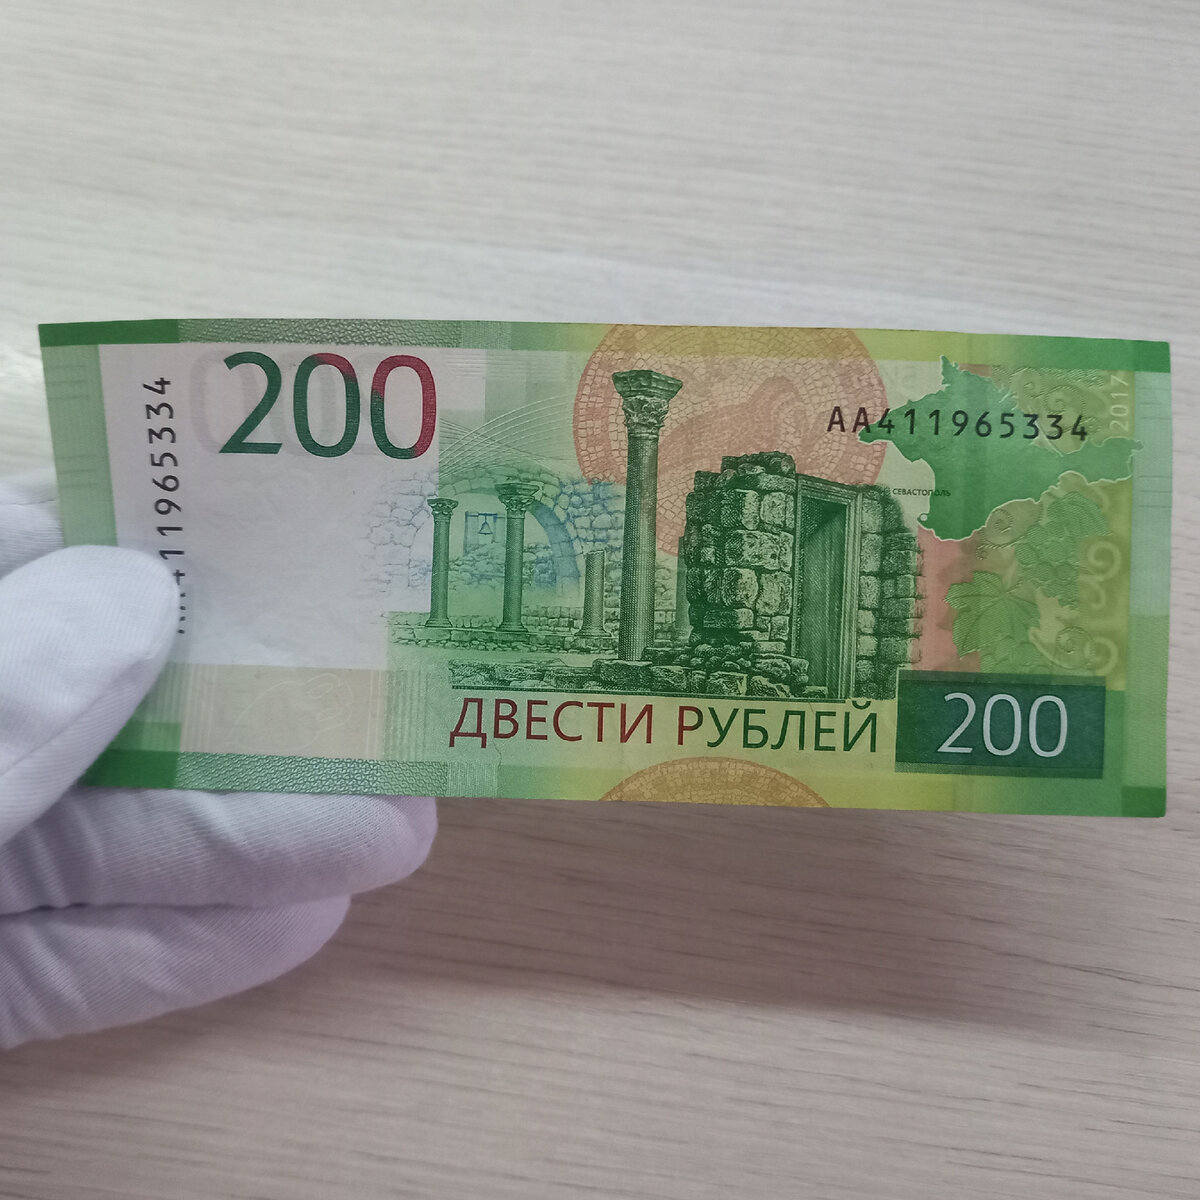 Бесплатные 200 рублей. 200 Рублей банкнота. 200 Рублей бумажные. 200 Руб новые. Новая 200 рублевая купюра.